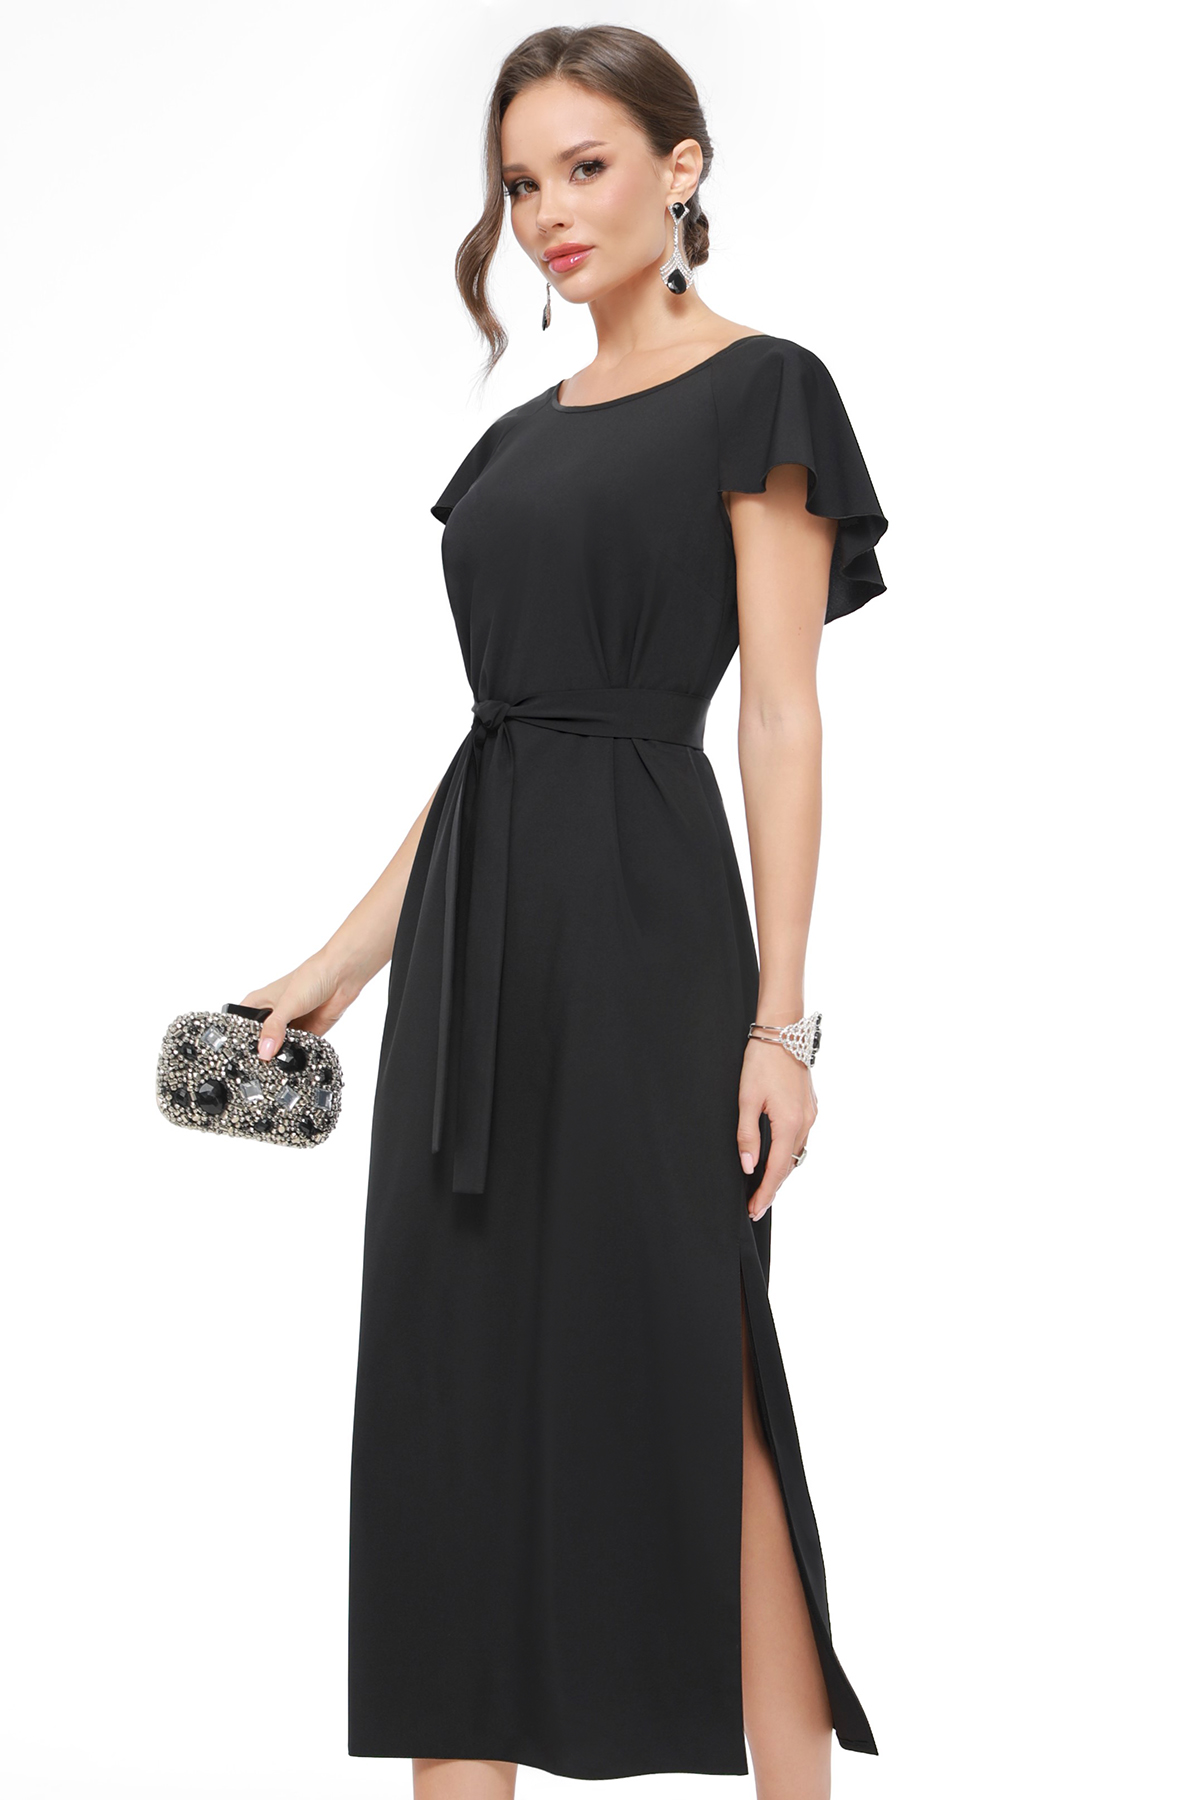 Платье женское DSTrend 0430 черное 52